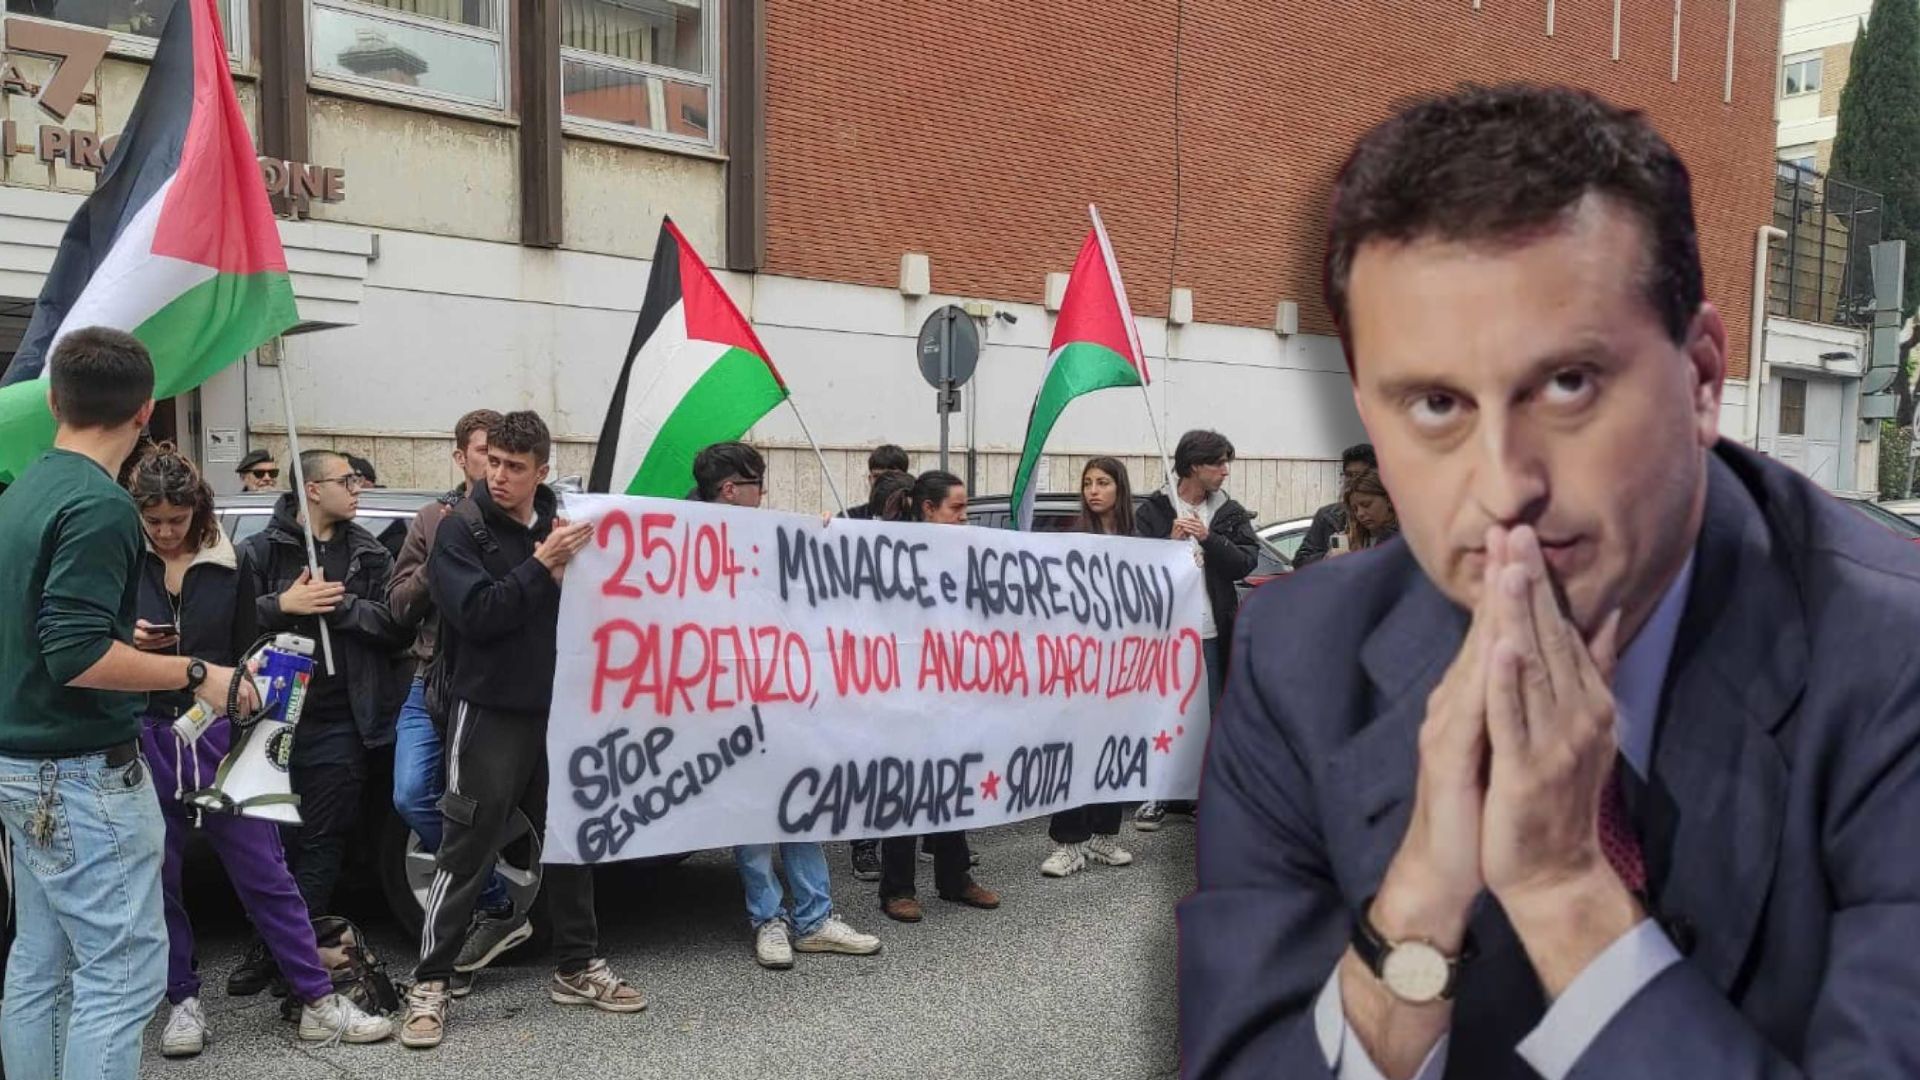 Gruppo di studenti contesta David Parenzo davanti alla redazione di La7. Il giornalista: “Oggi girare con la kippà è pericoloso”